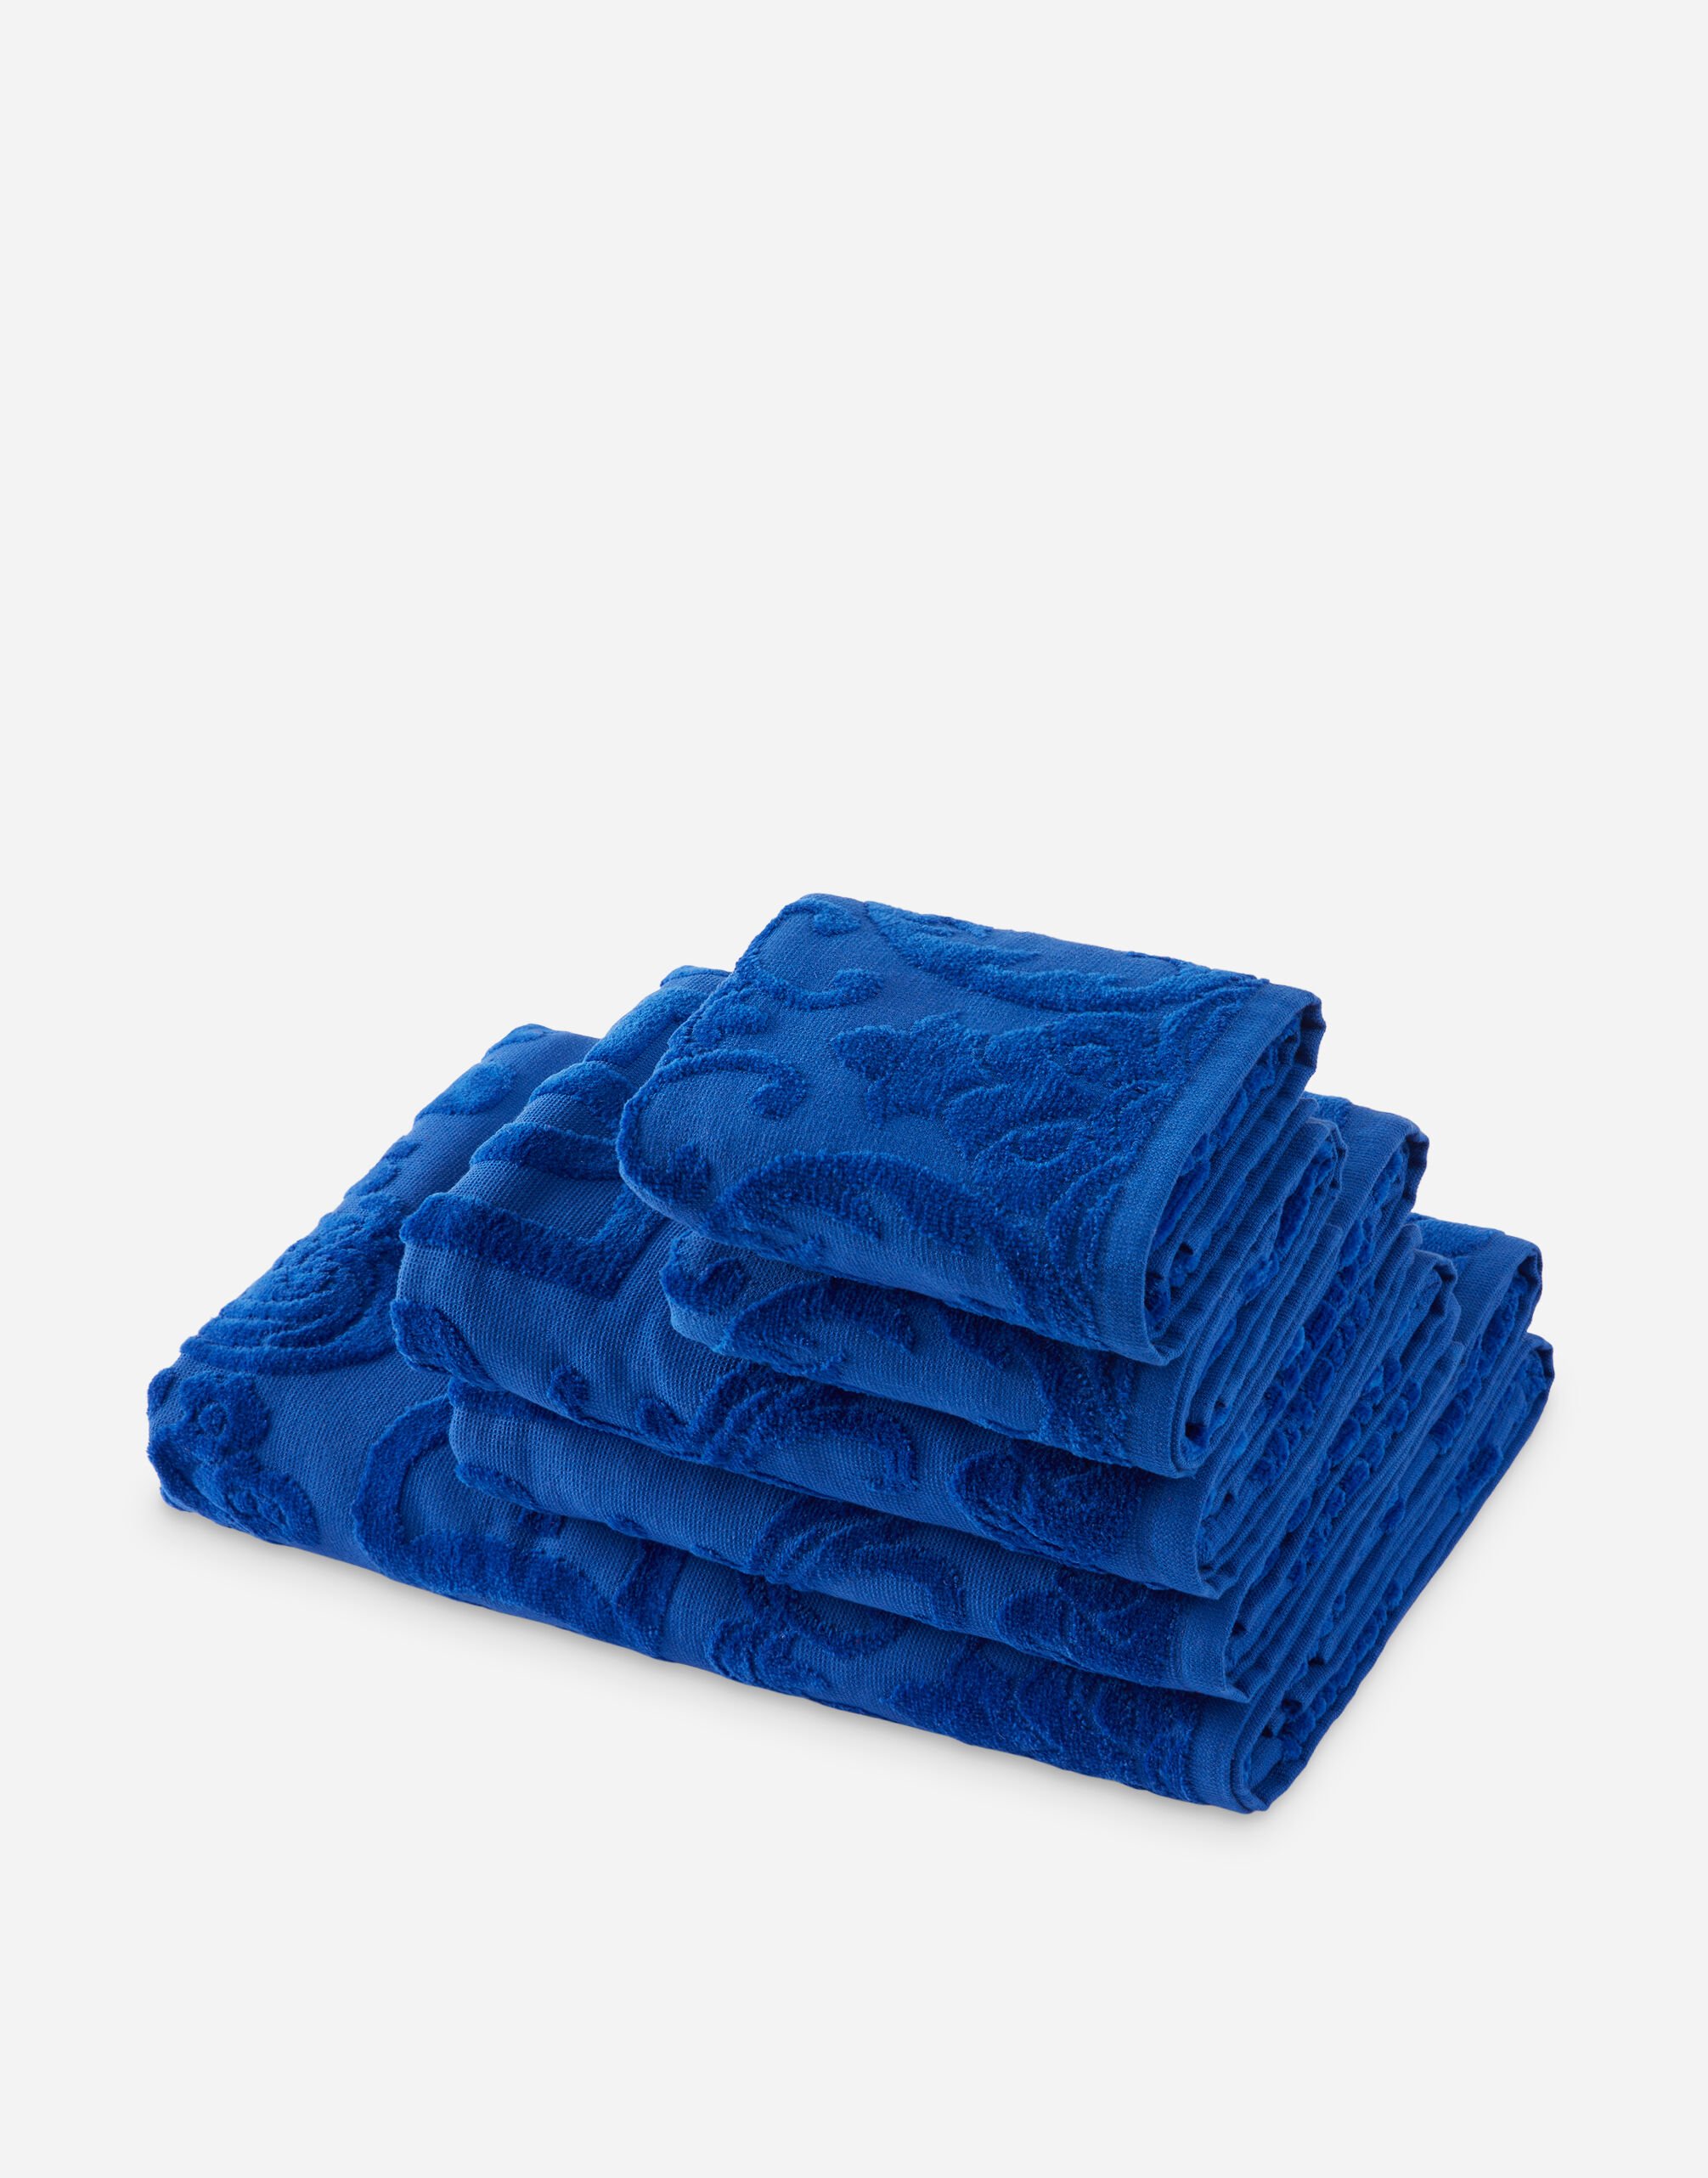 Dolce & Gabbana Set 5 Cotton Towels Multicolor TCE001TCAIY